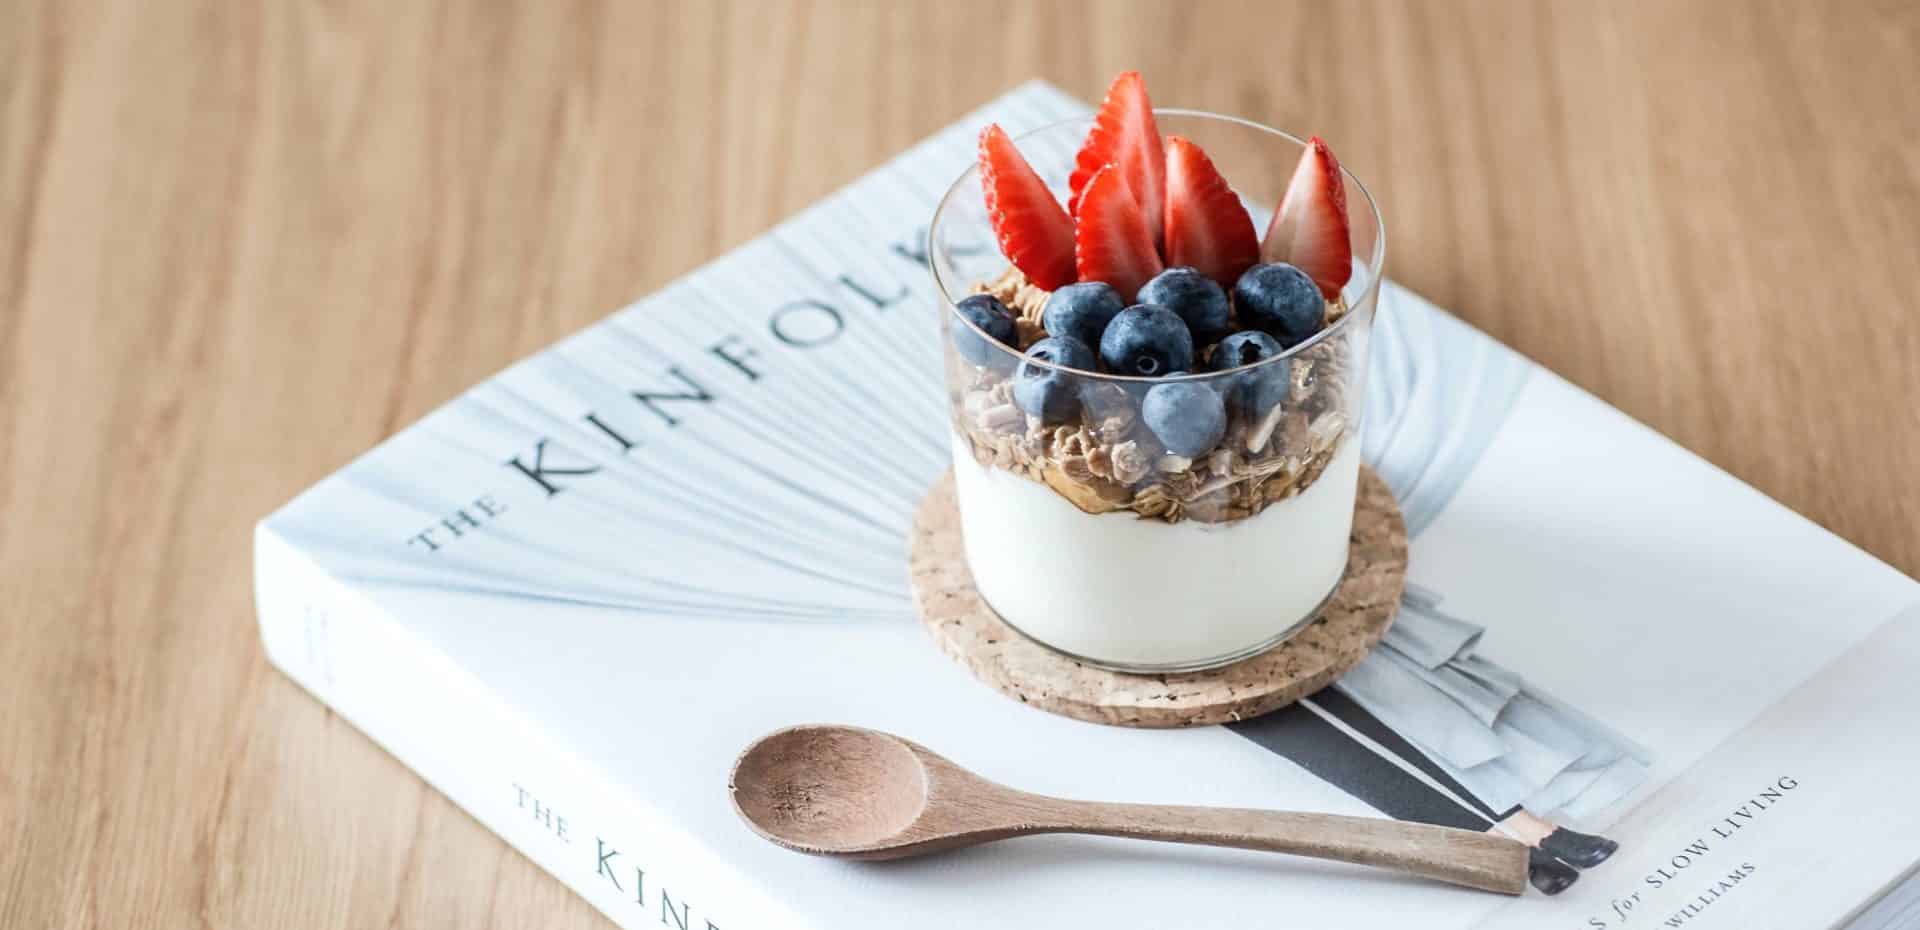 Grčki jogurt dobar je za zdravlje, a može se kombinirati sa zanimljivim namirnicama